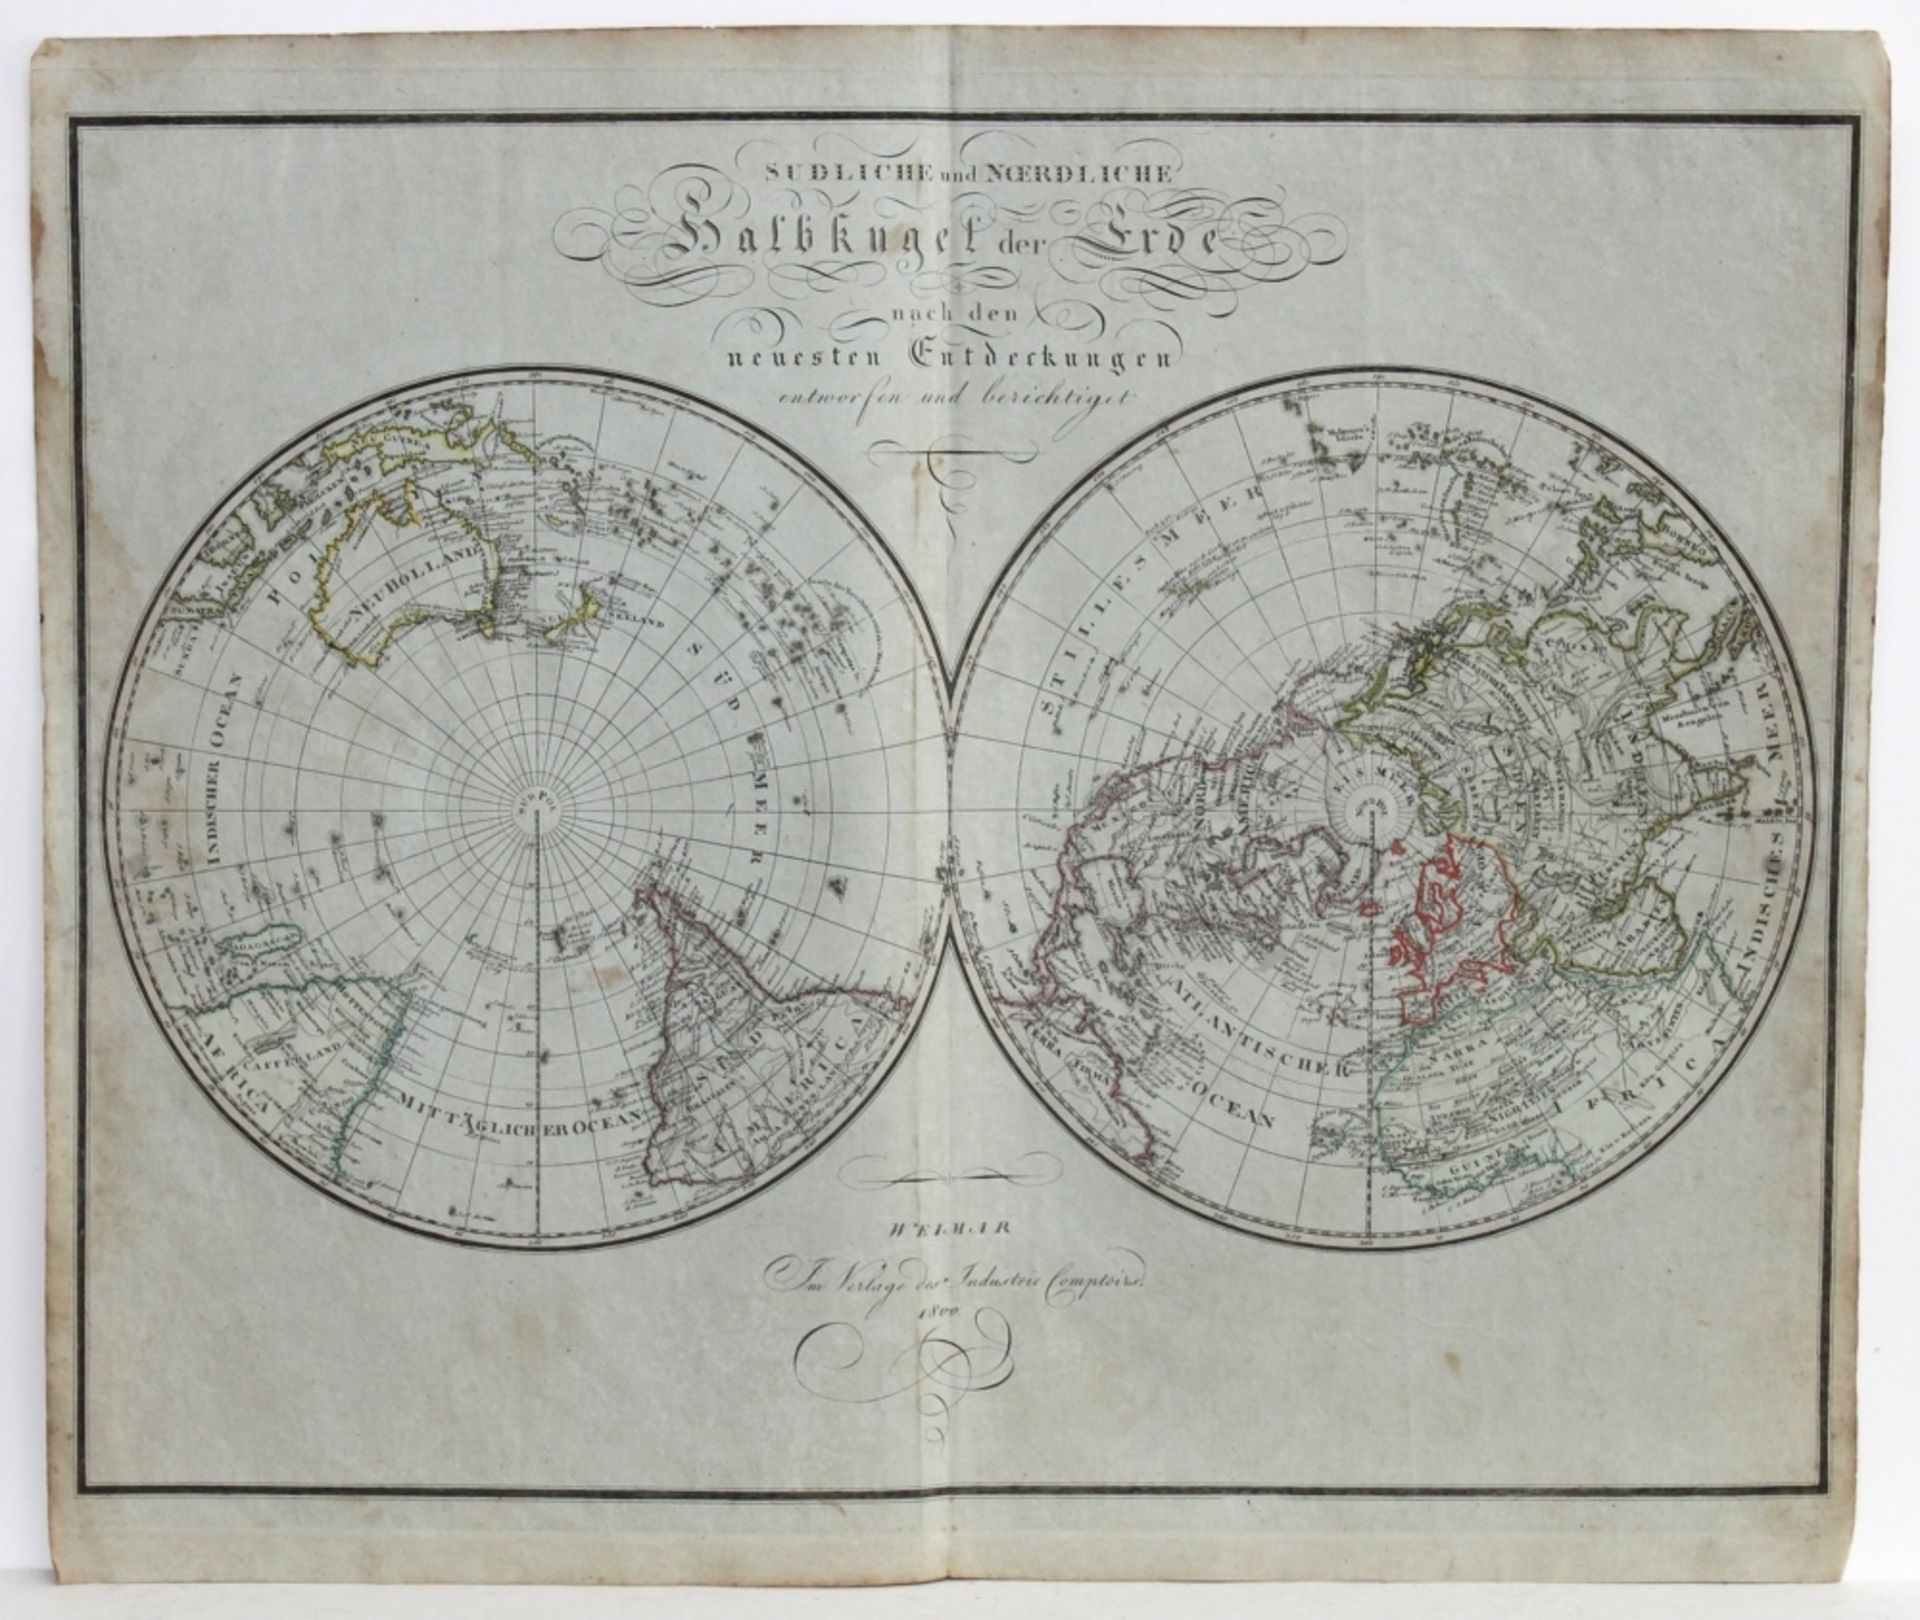 Landkarten. Weltkarte. Die Südliche und Nördliche Halbkugel. Grenzkolorierte Kupferstichkarte auf